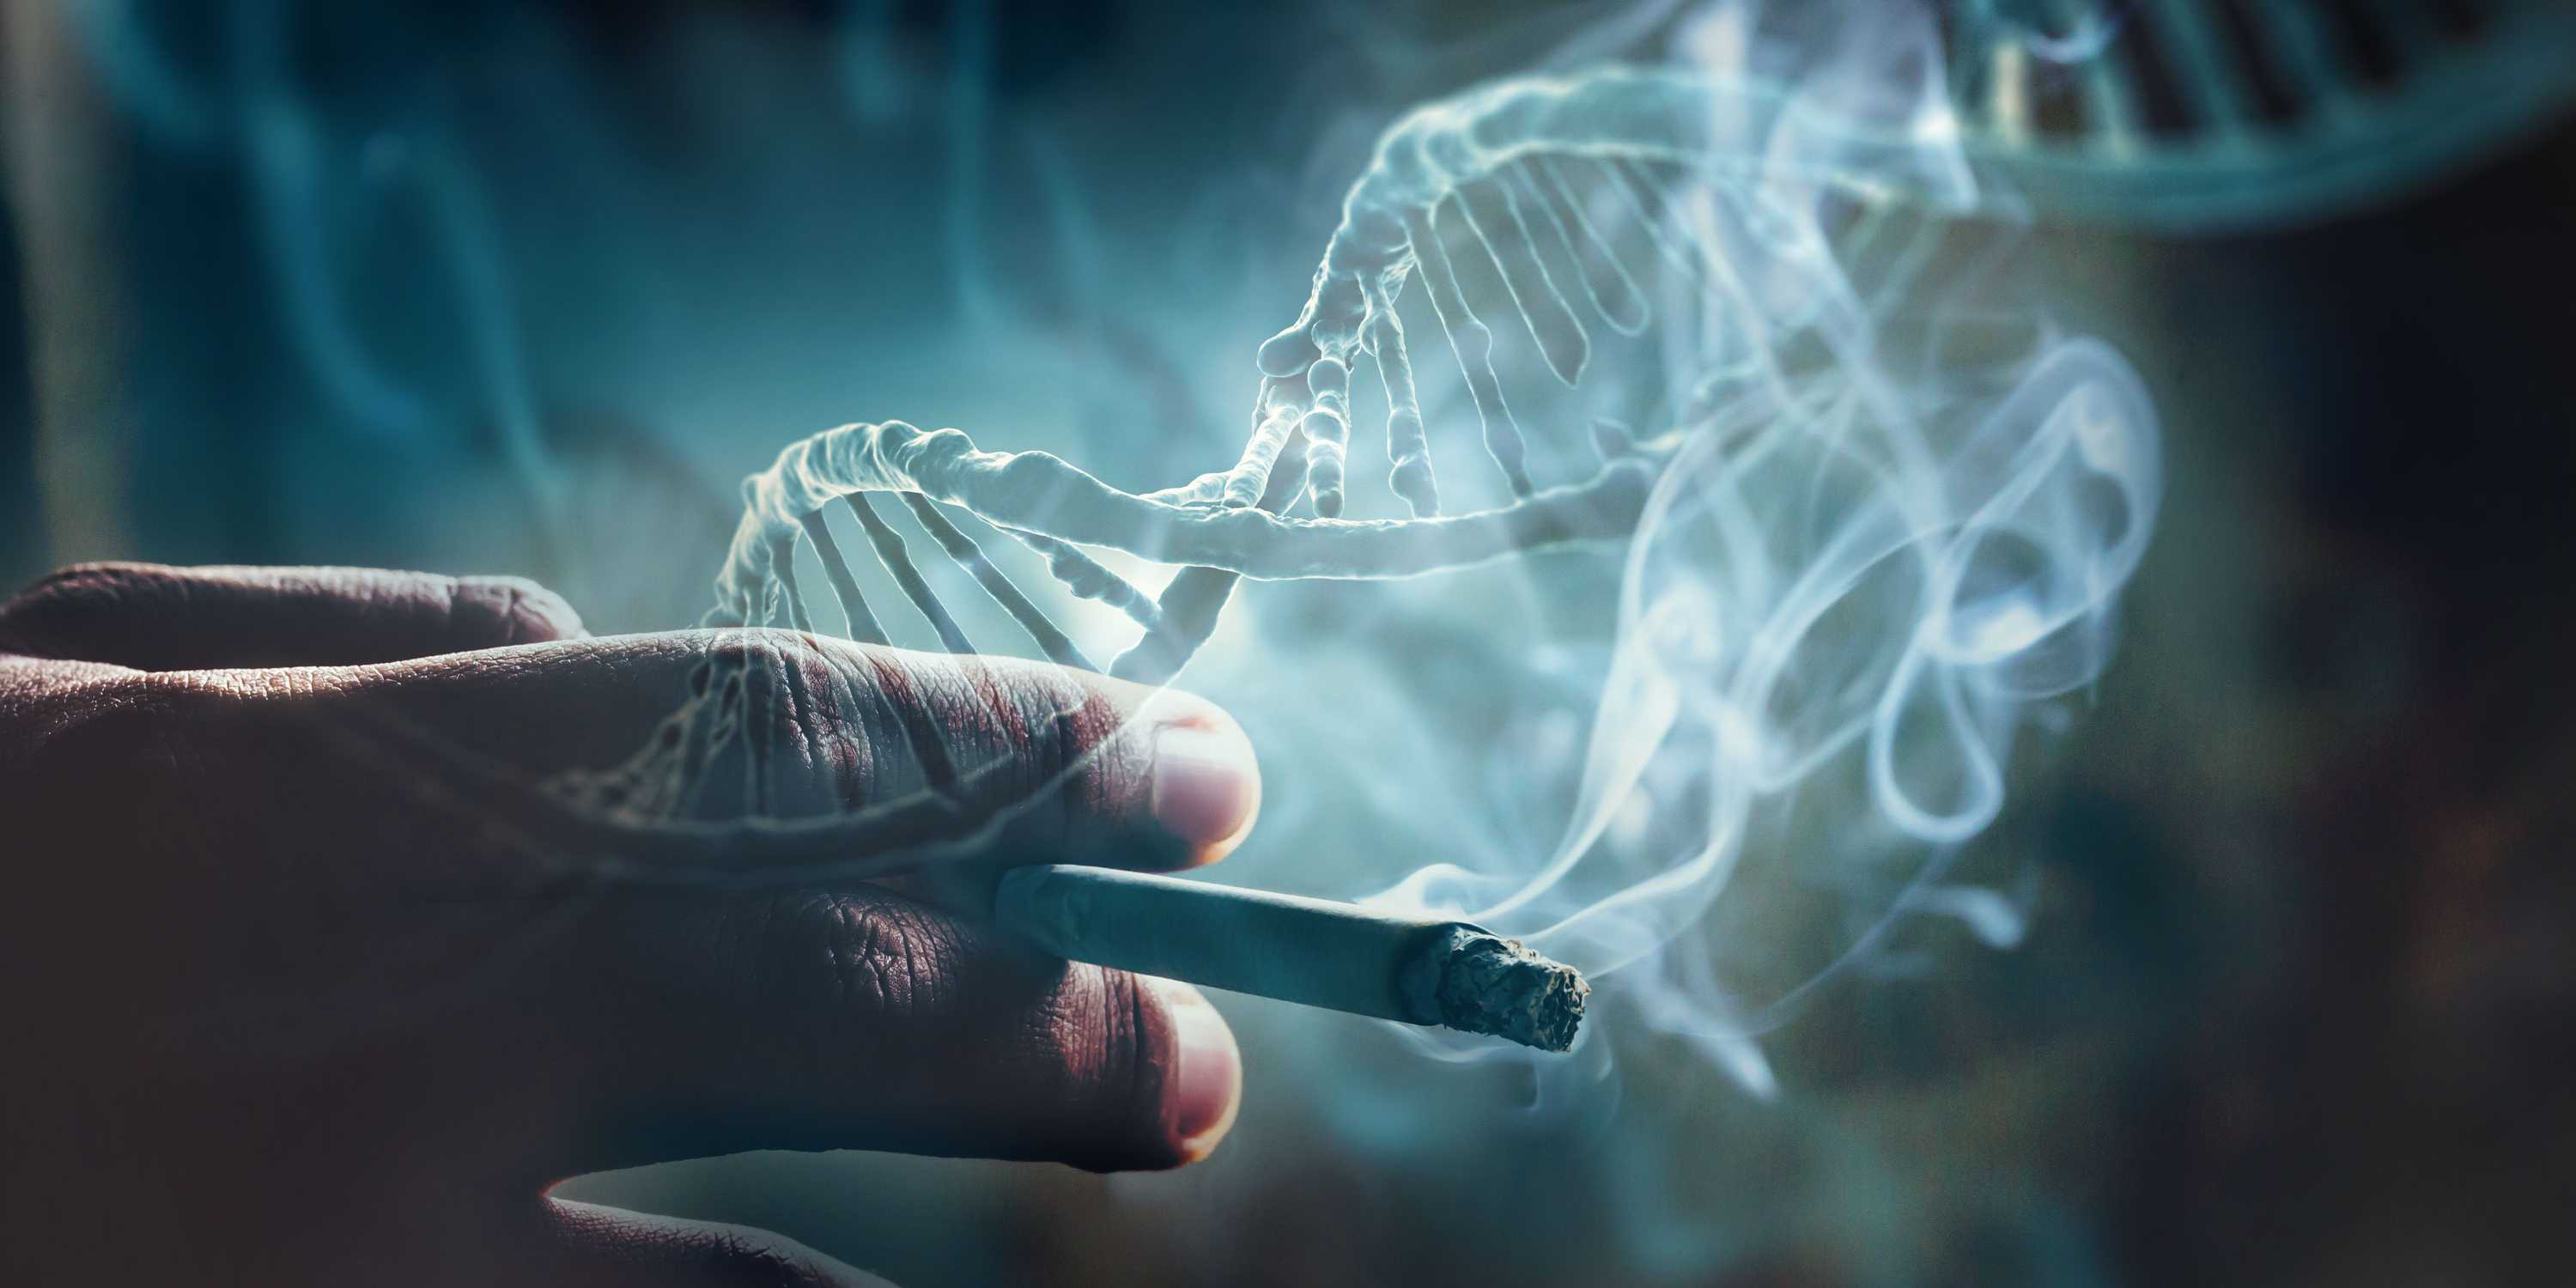 Das Bild zeigt eine Hand, die eine Zigarette hält. Darüber sind DNA-Stränge, die durchschimmernd erscheinend, zu sehen.